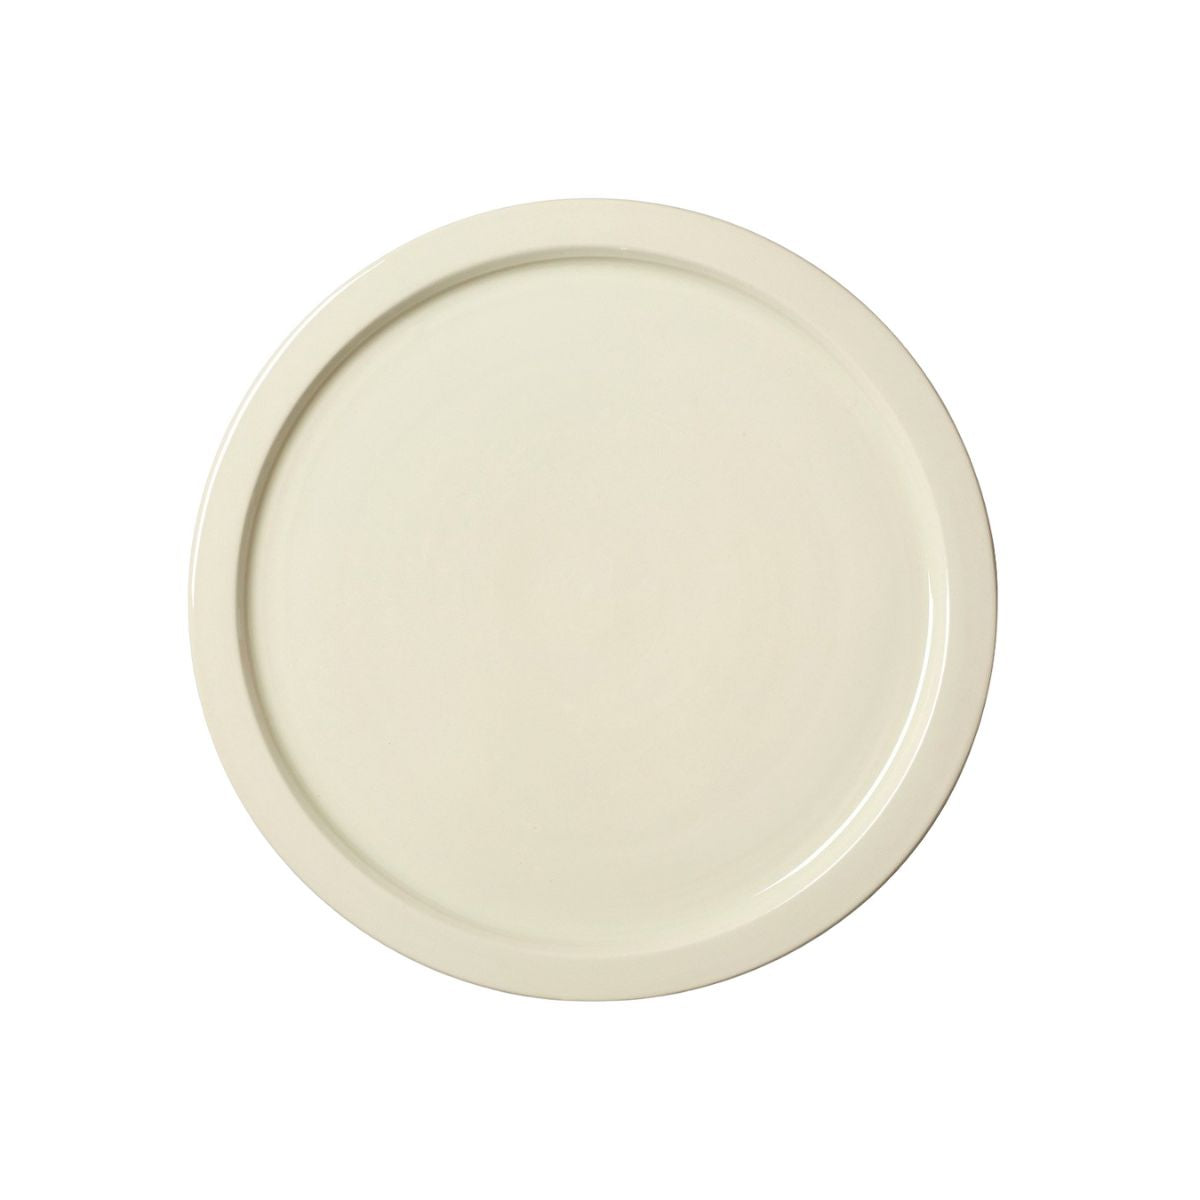 Glazed White Creamware Dinner Plate